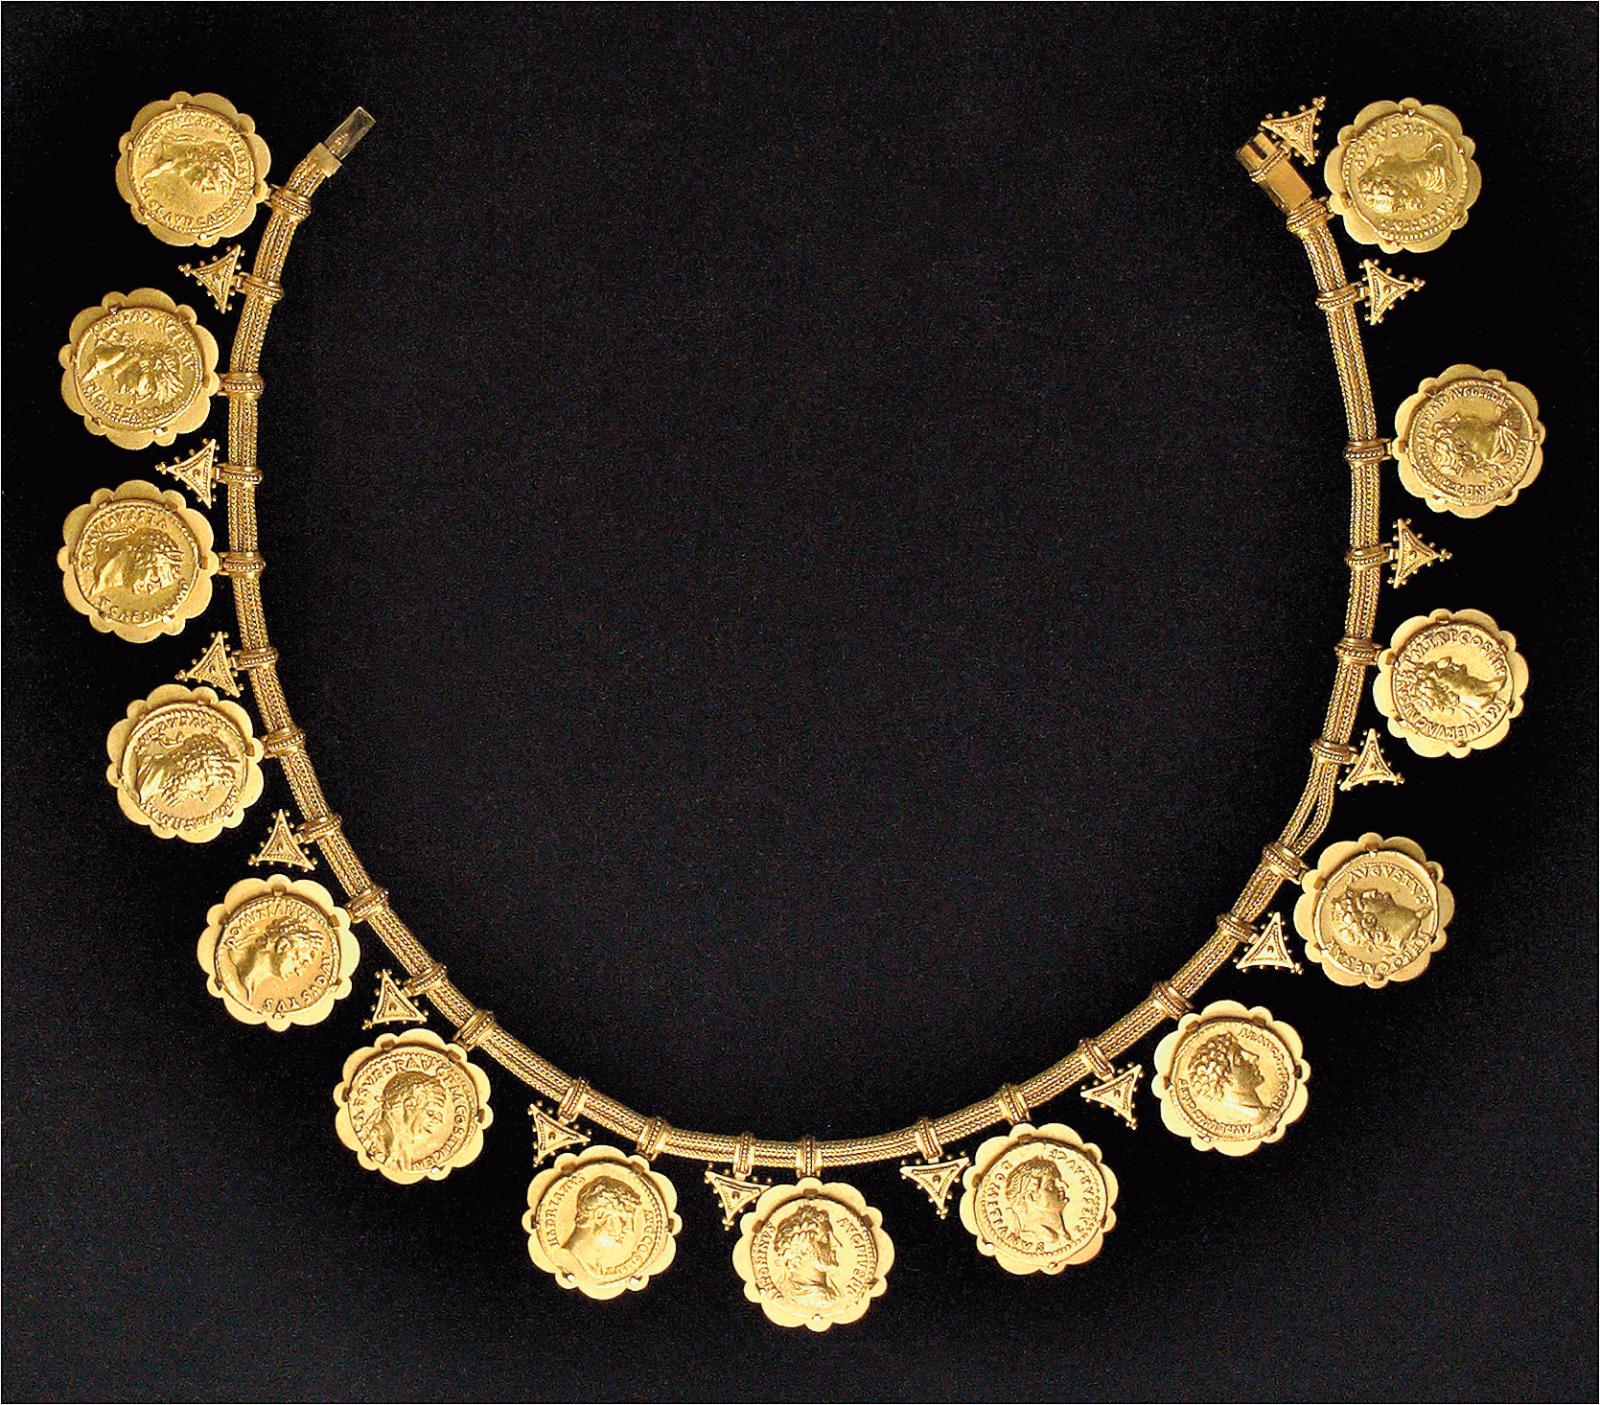 L’or des empereurs sur bijou XIXe